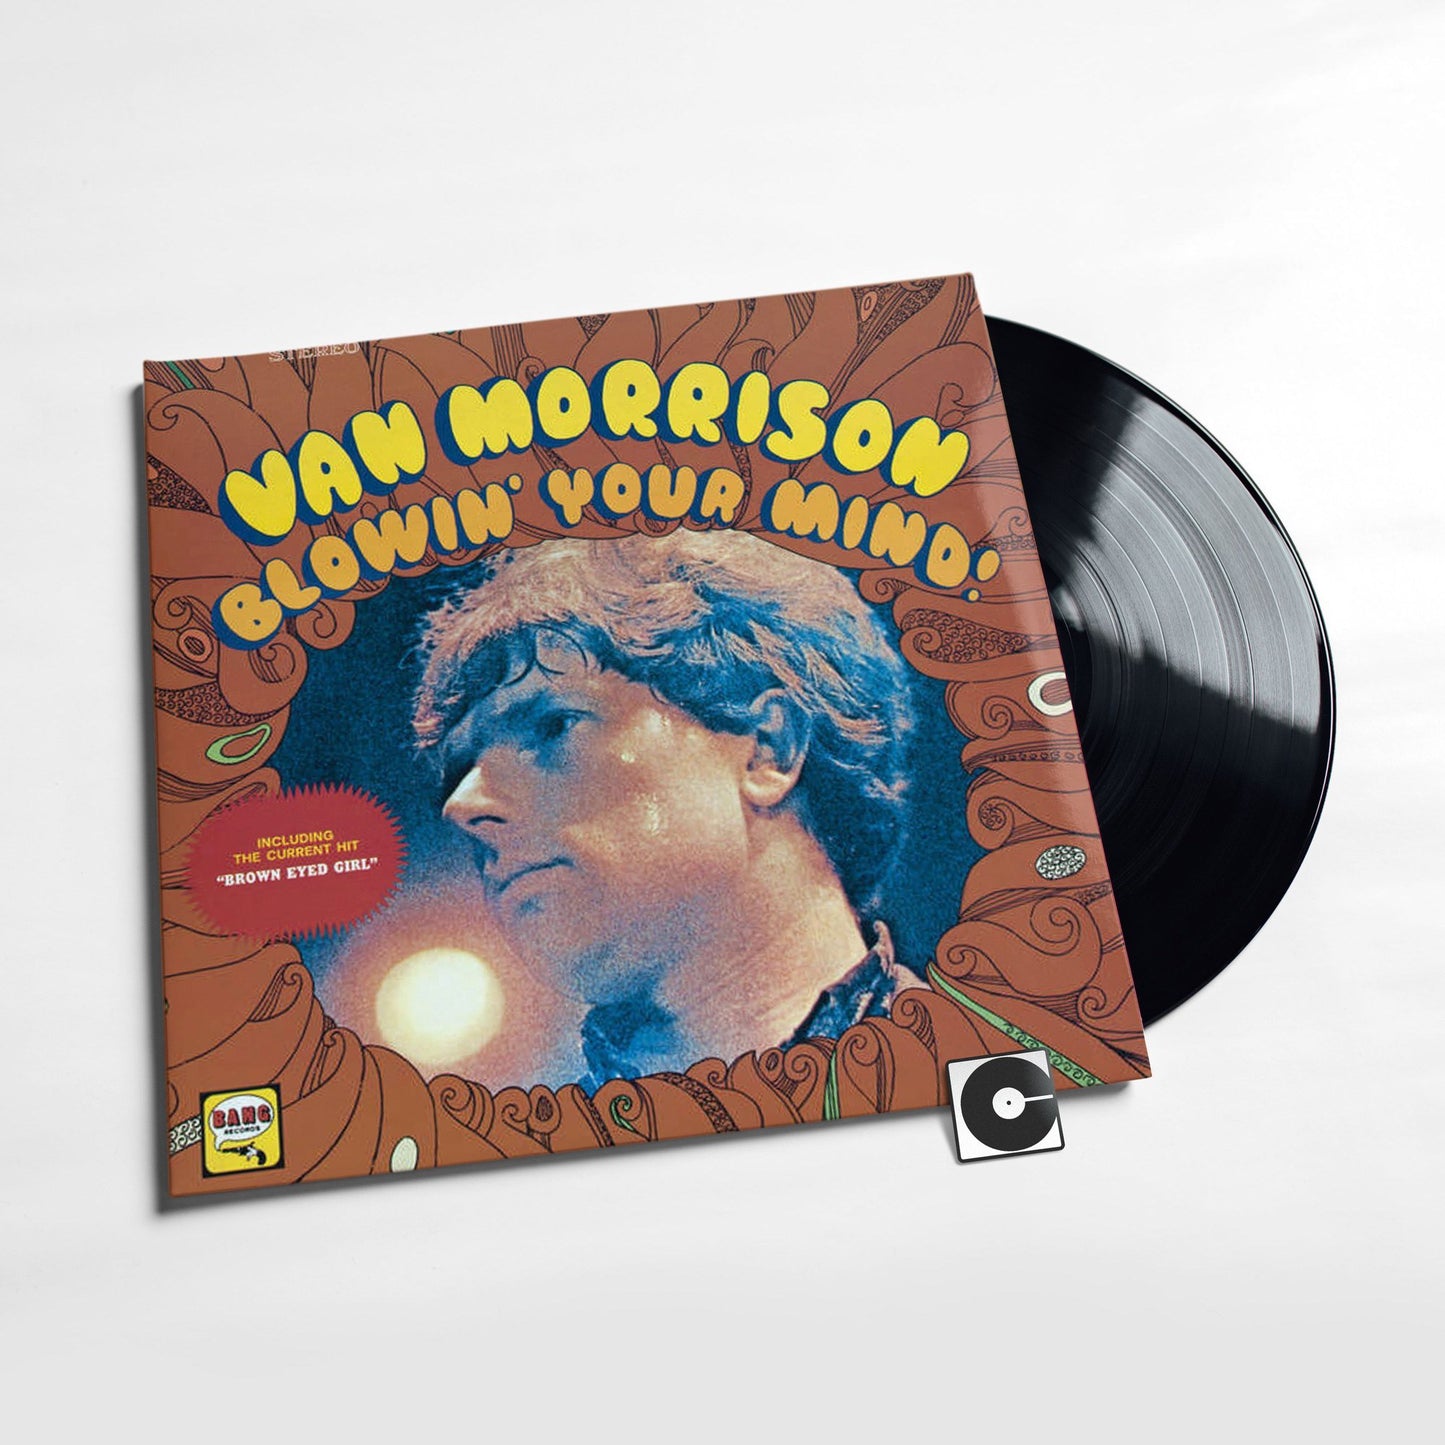 Van Morrison - "Blowin' Your Mind"